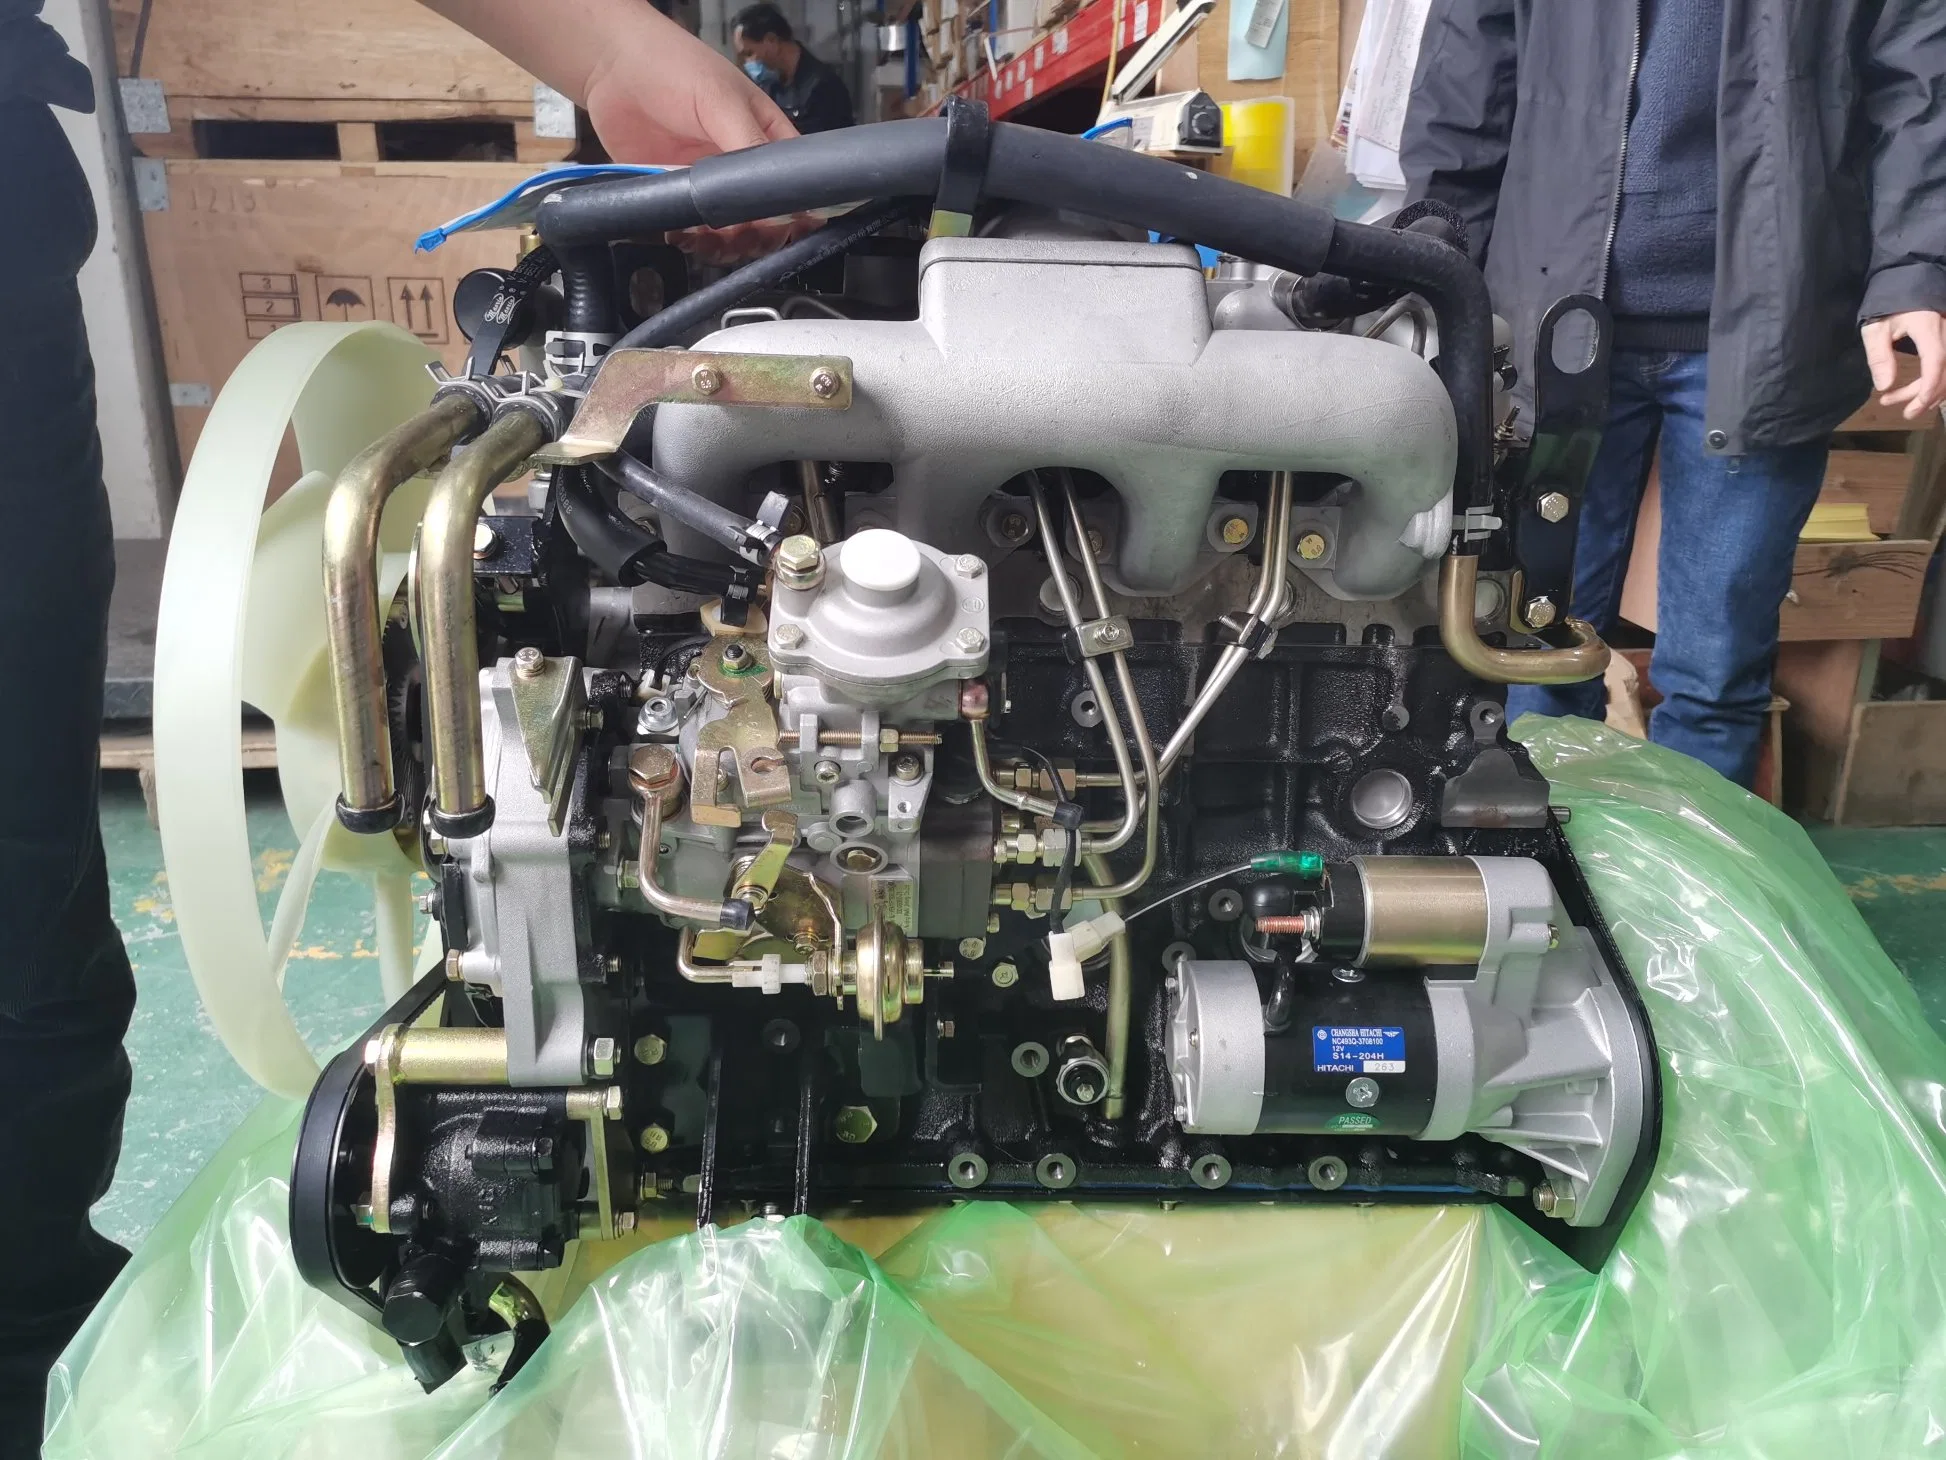 Dieselmotor/LKW-Motor/Wasserkühlung Engine4 Zylinder 68kw 4jb1 /4jb1t Für LKW SUV Mairne Diesel Motor Boot Motor Motor für Versand